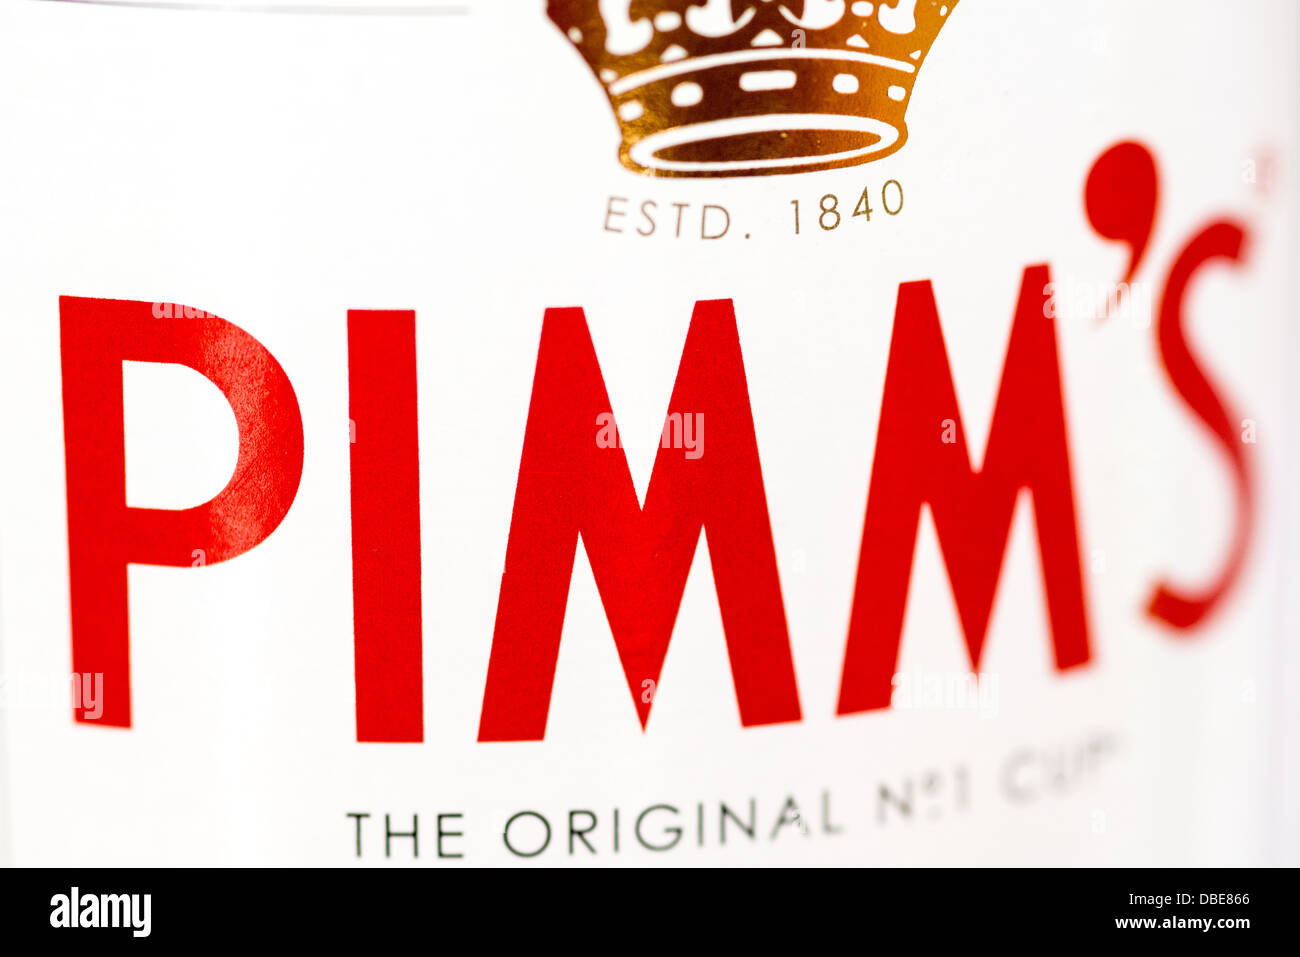 LONDON, UK - Eine Nahaufnahme der Etikett auf einer Flasche Pimm's, einem  berühmten Gin-basierte Englisch Geist mit einem proprietären Mischung aus  Aroma Zutaten Stockfotografie - Alamy